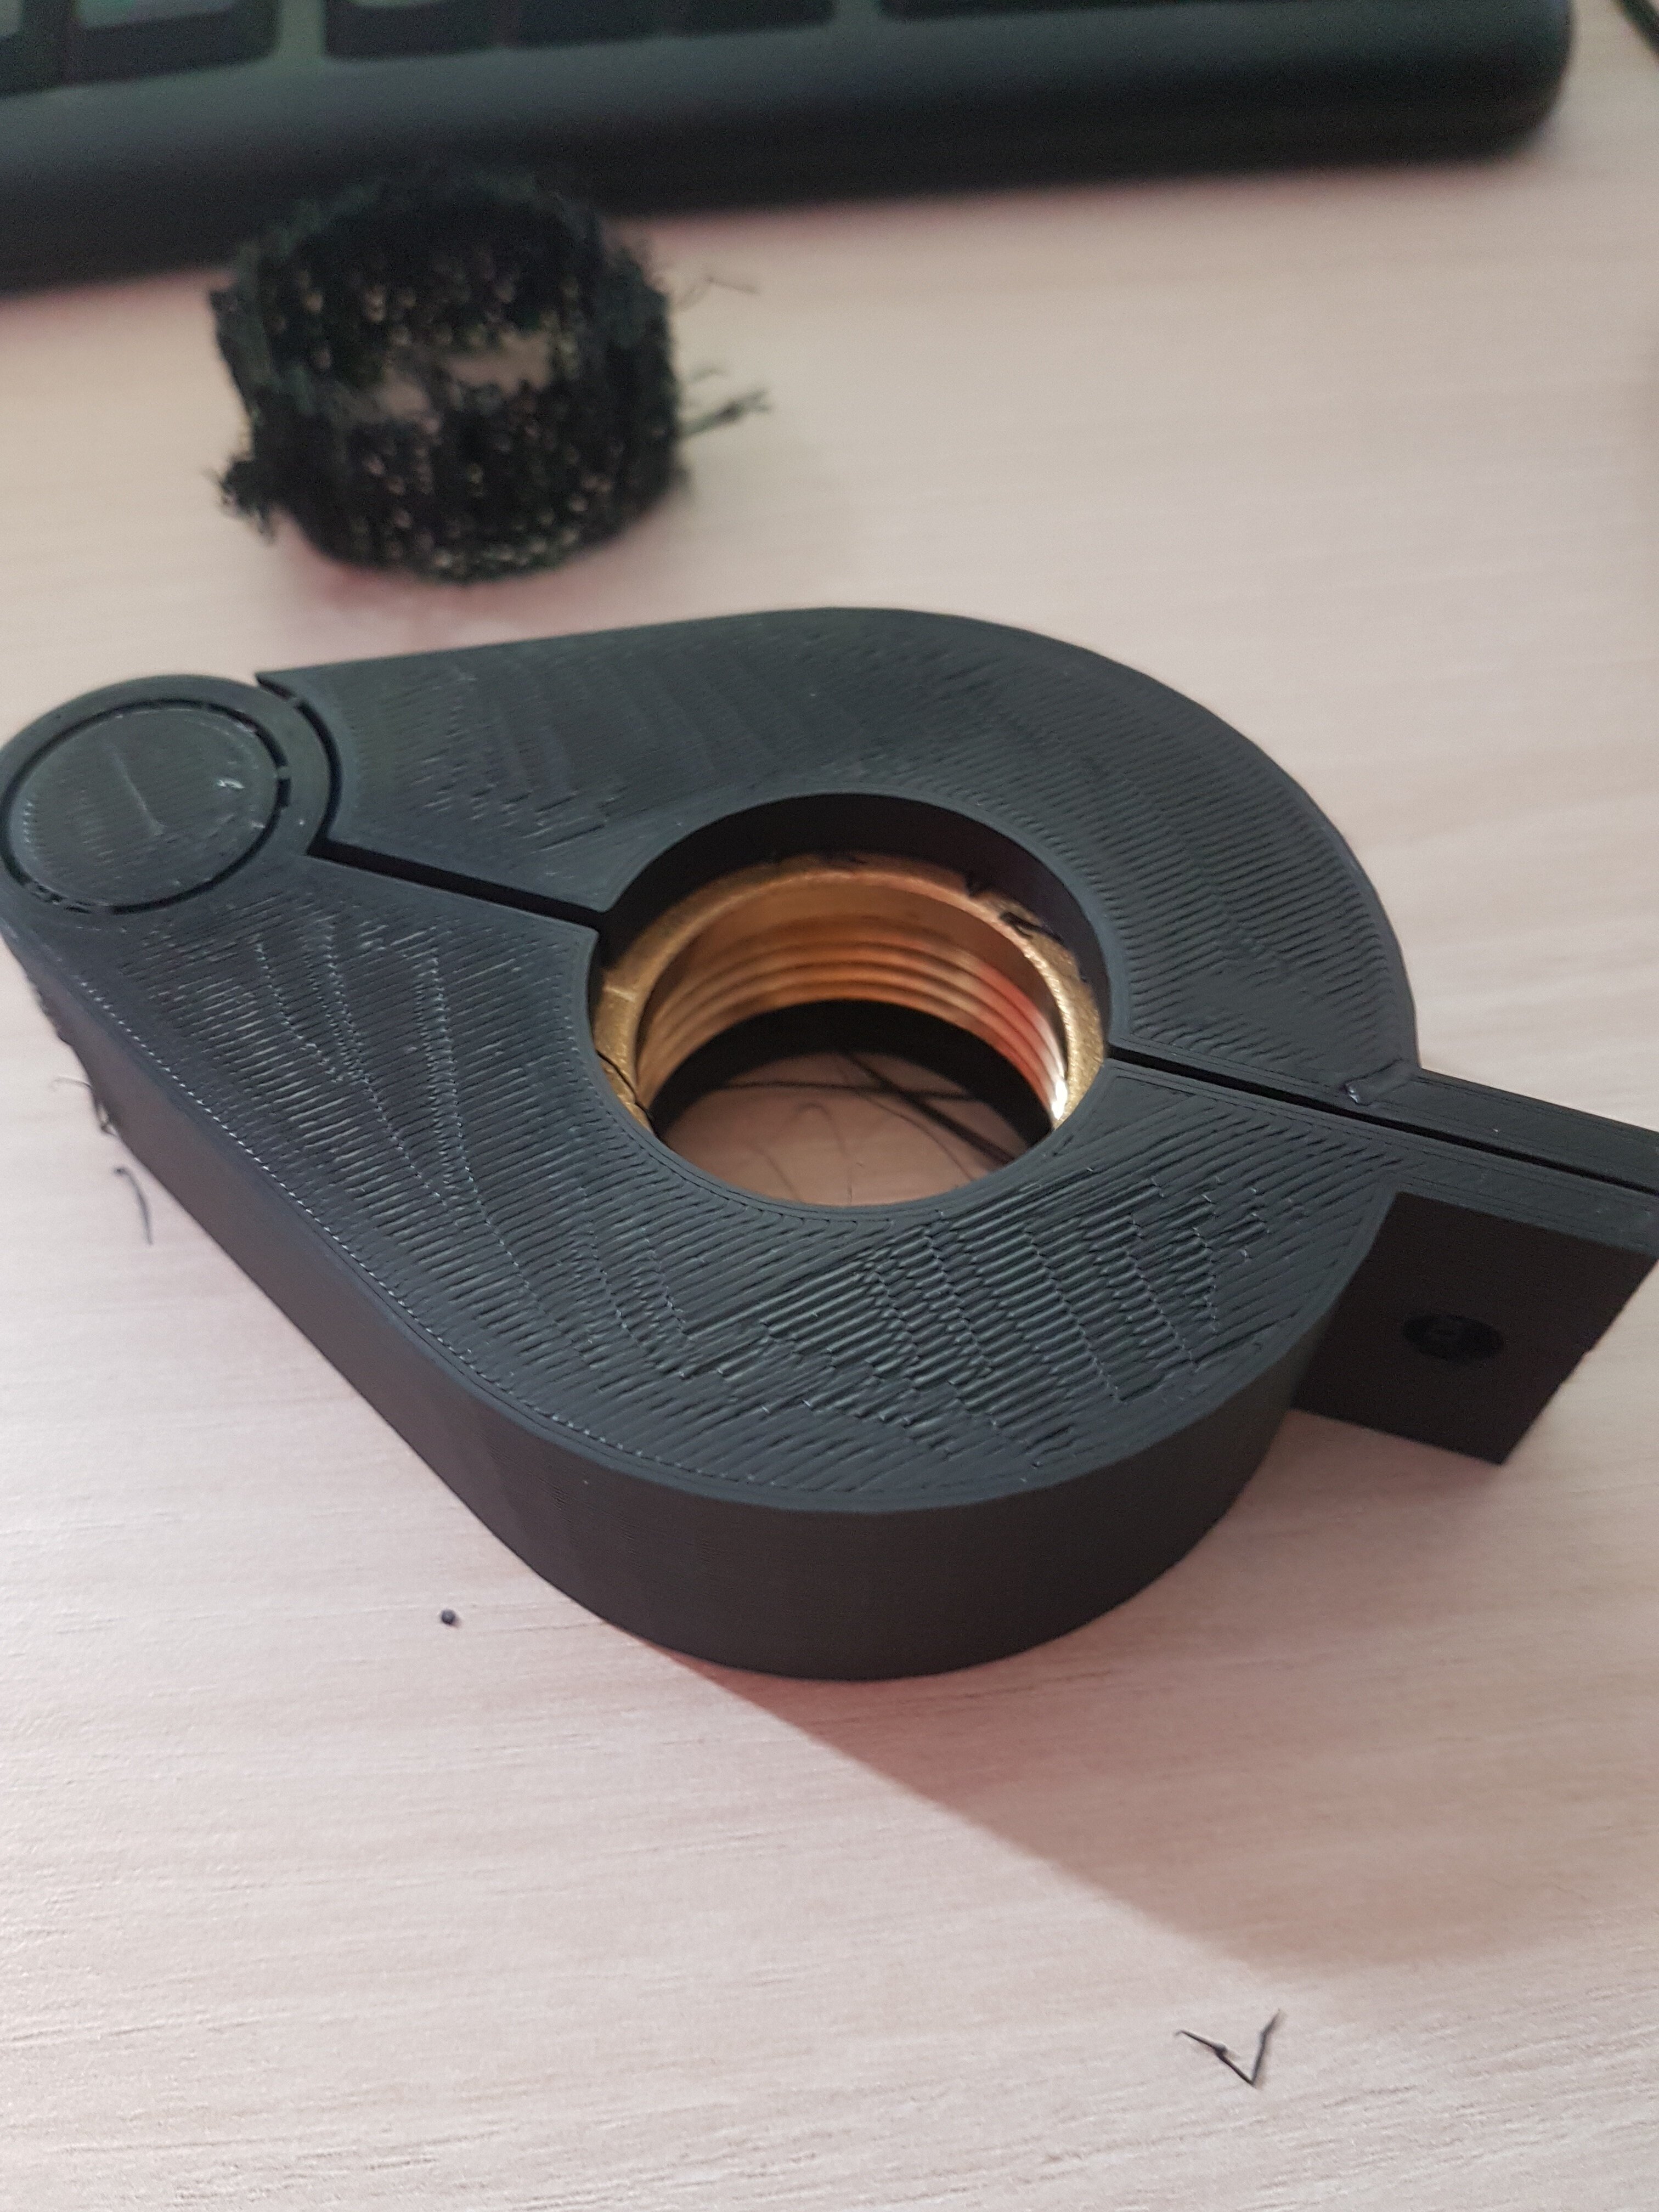 Zähler-Verschraubungssicherung aus dem 3D-Drucker